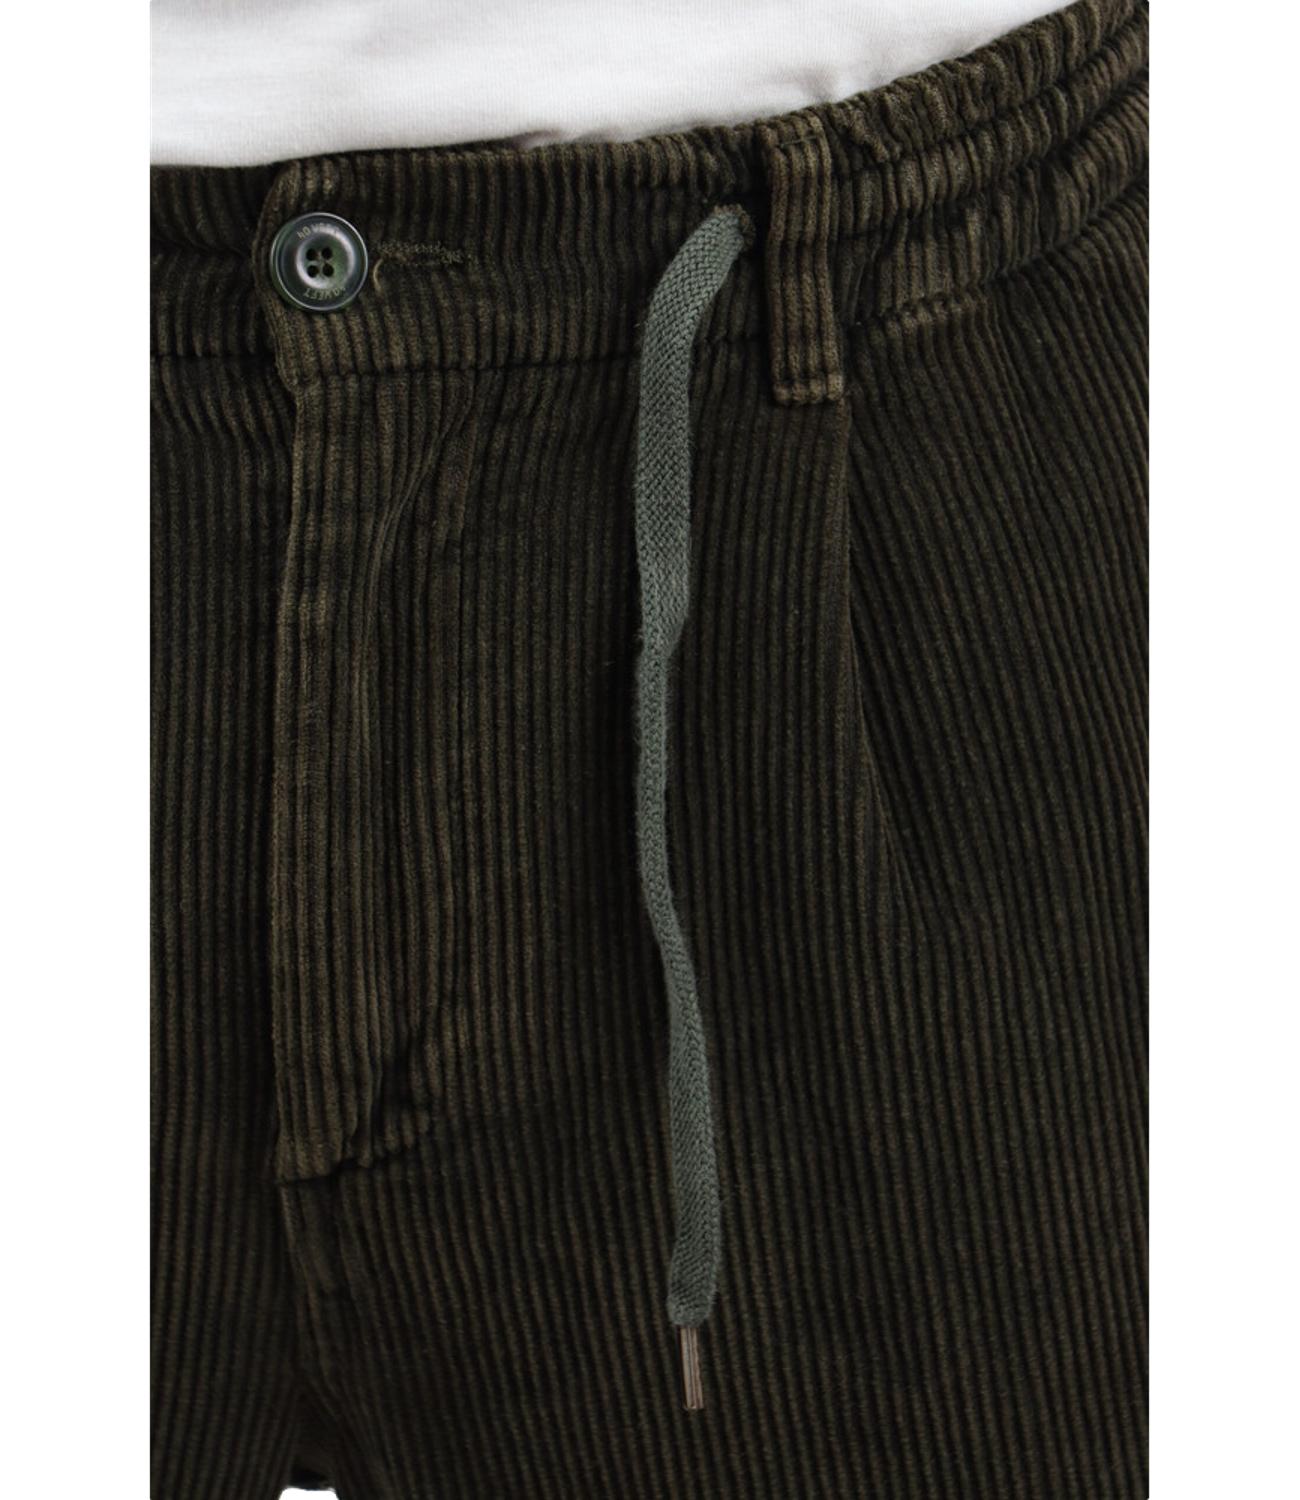 Aikoc men's cargo trousers in velvet with dark green pockets